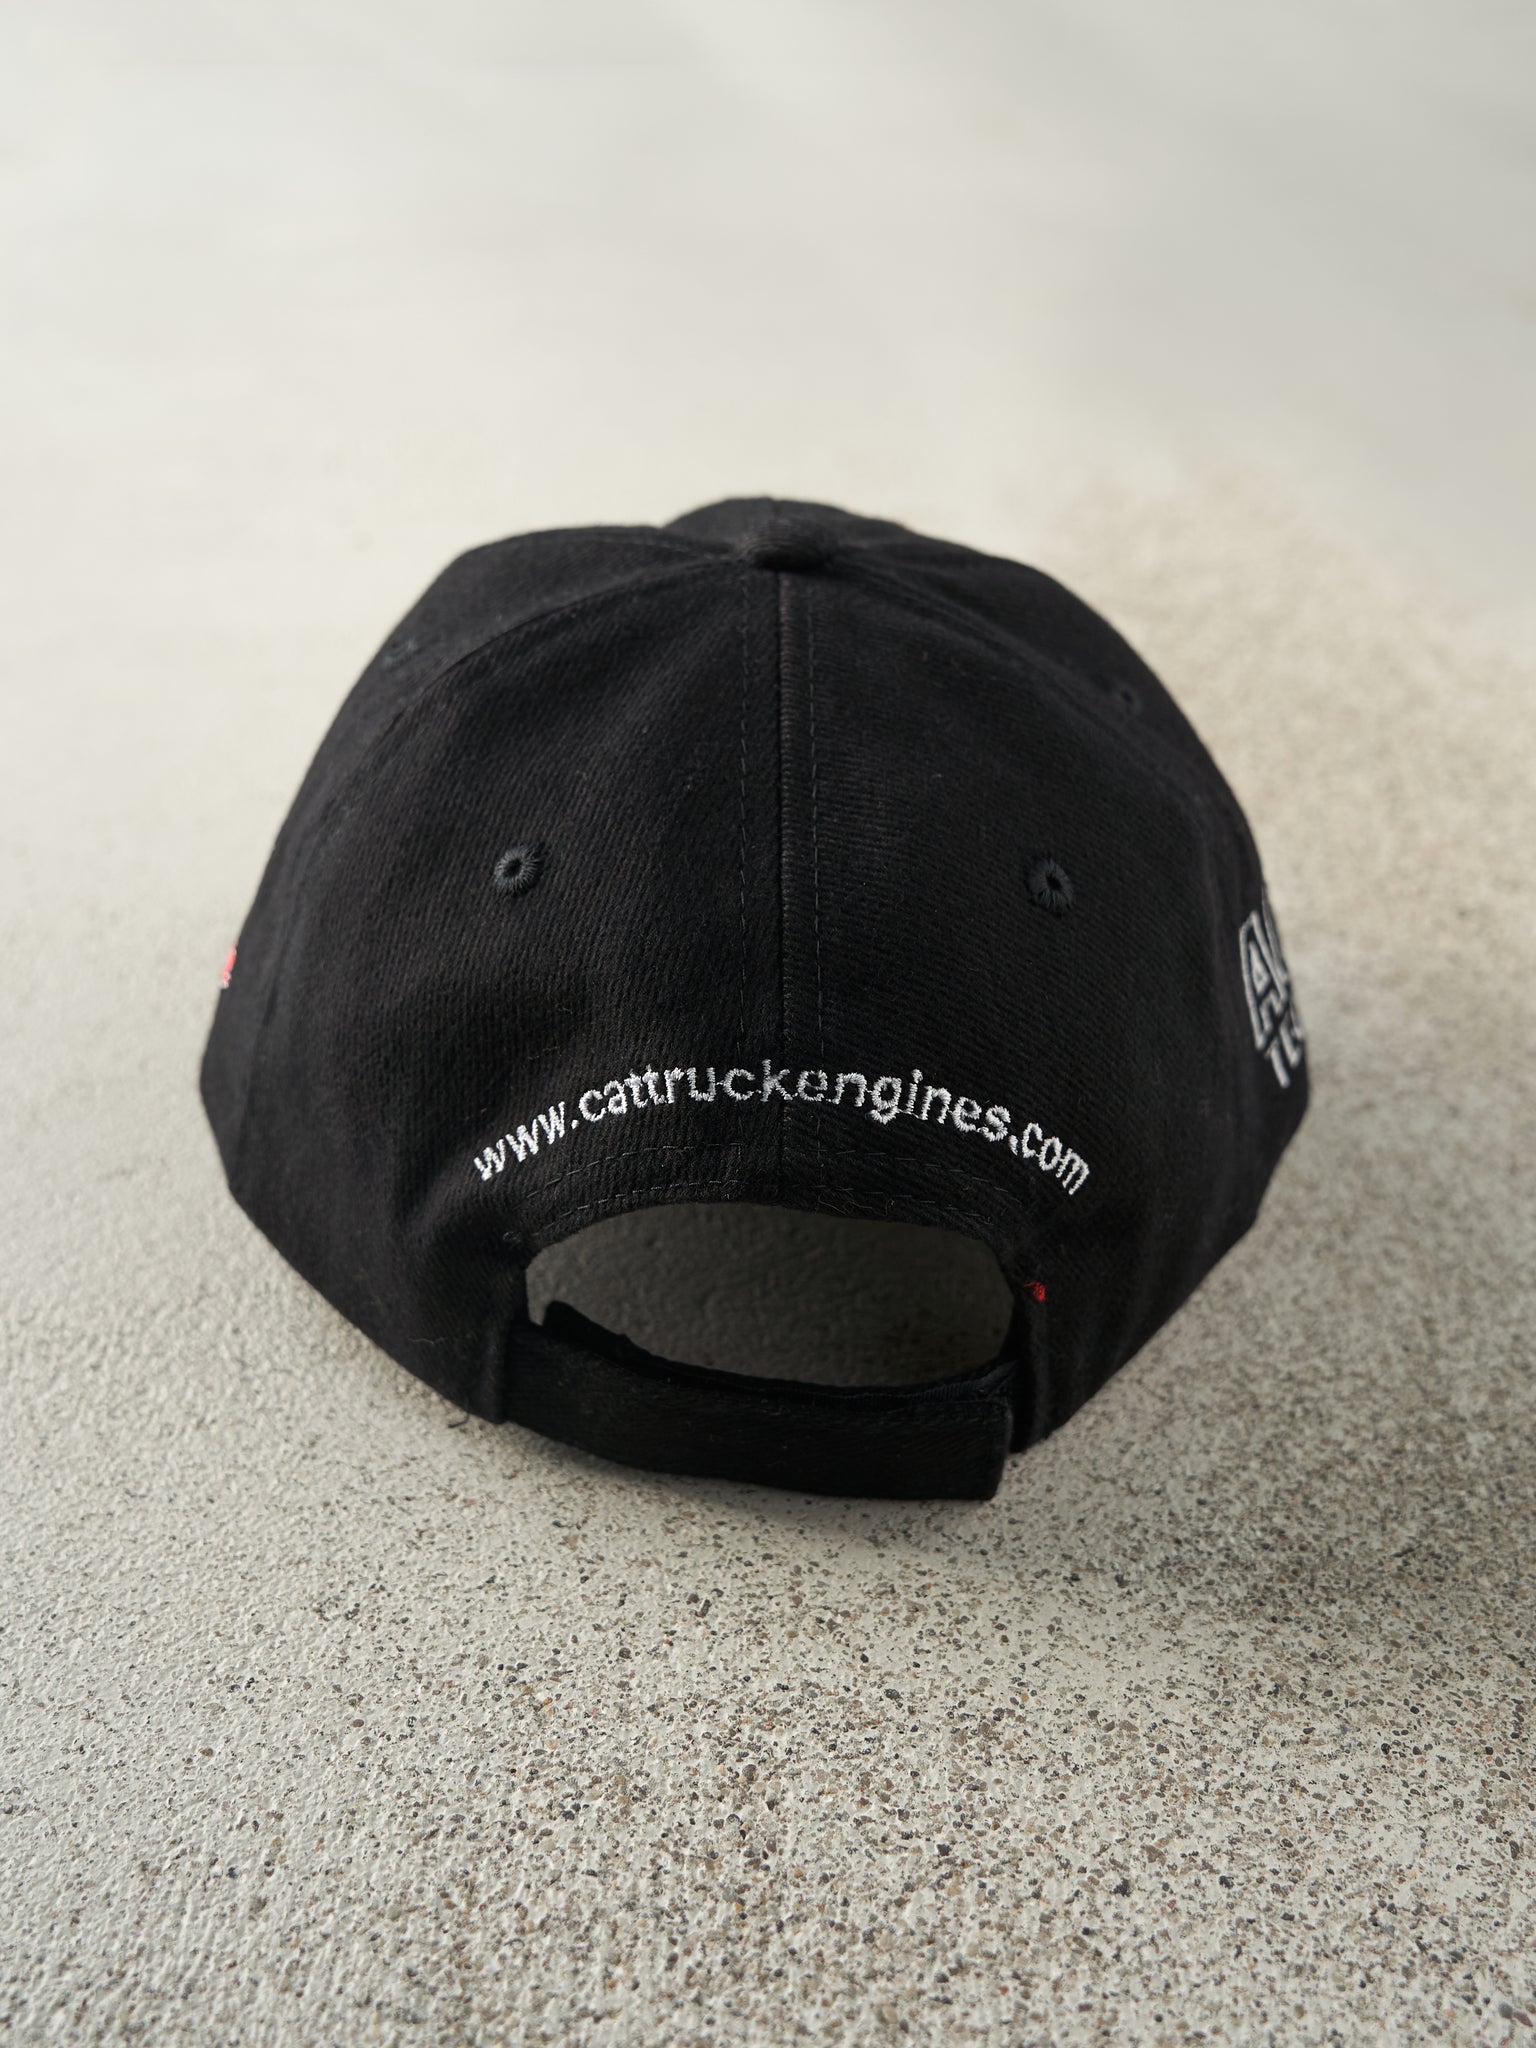 Vintage Y2K Black Cat Truck Engines Embroidered Velcro Back Hat